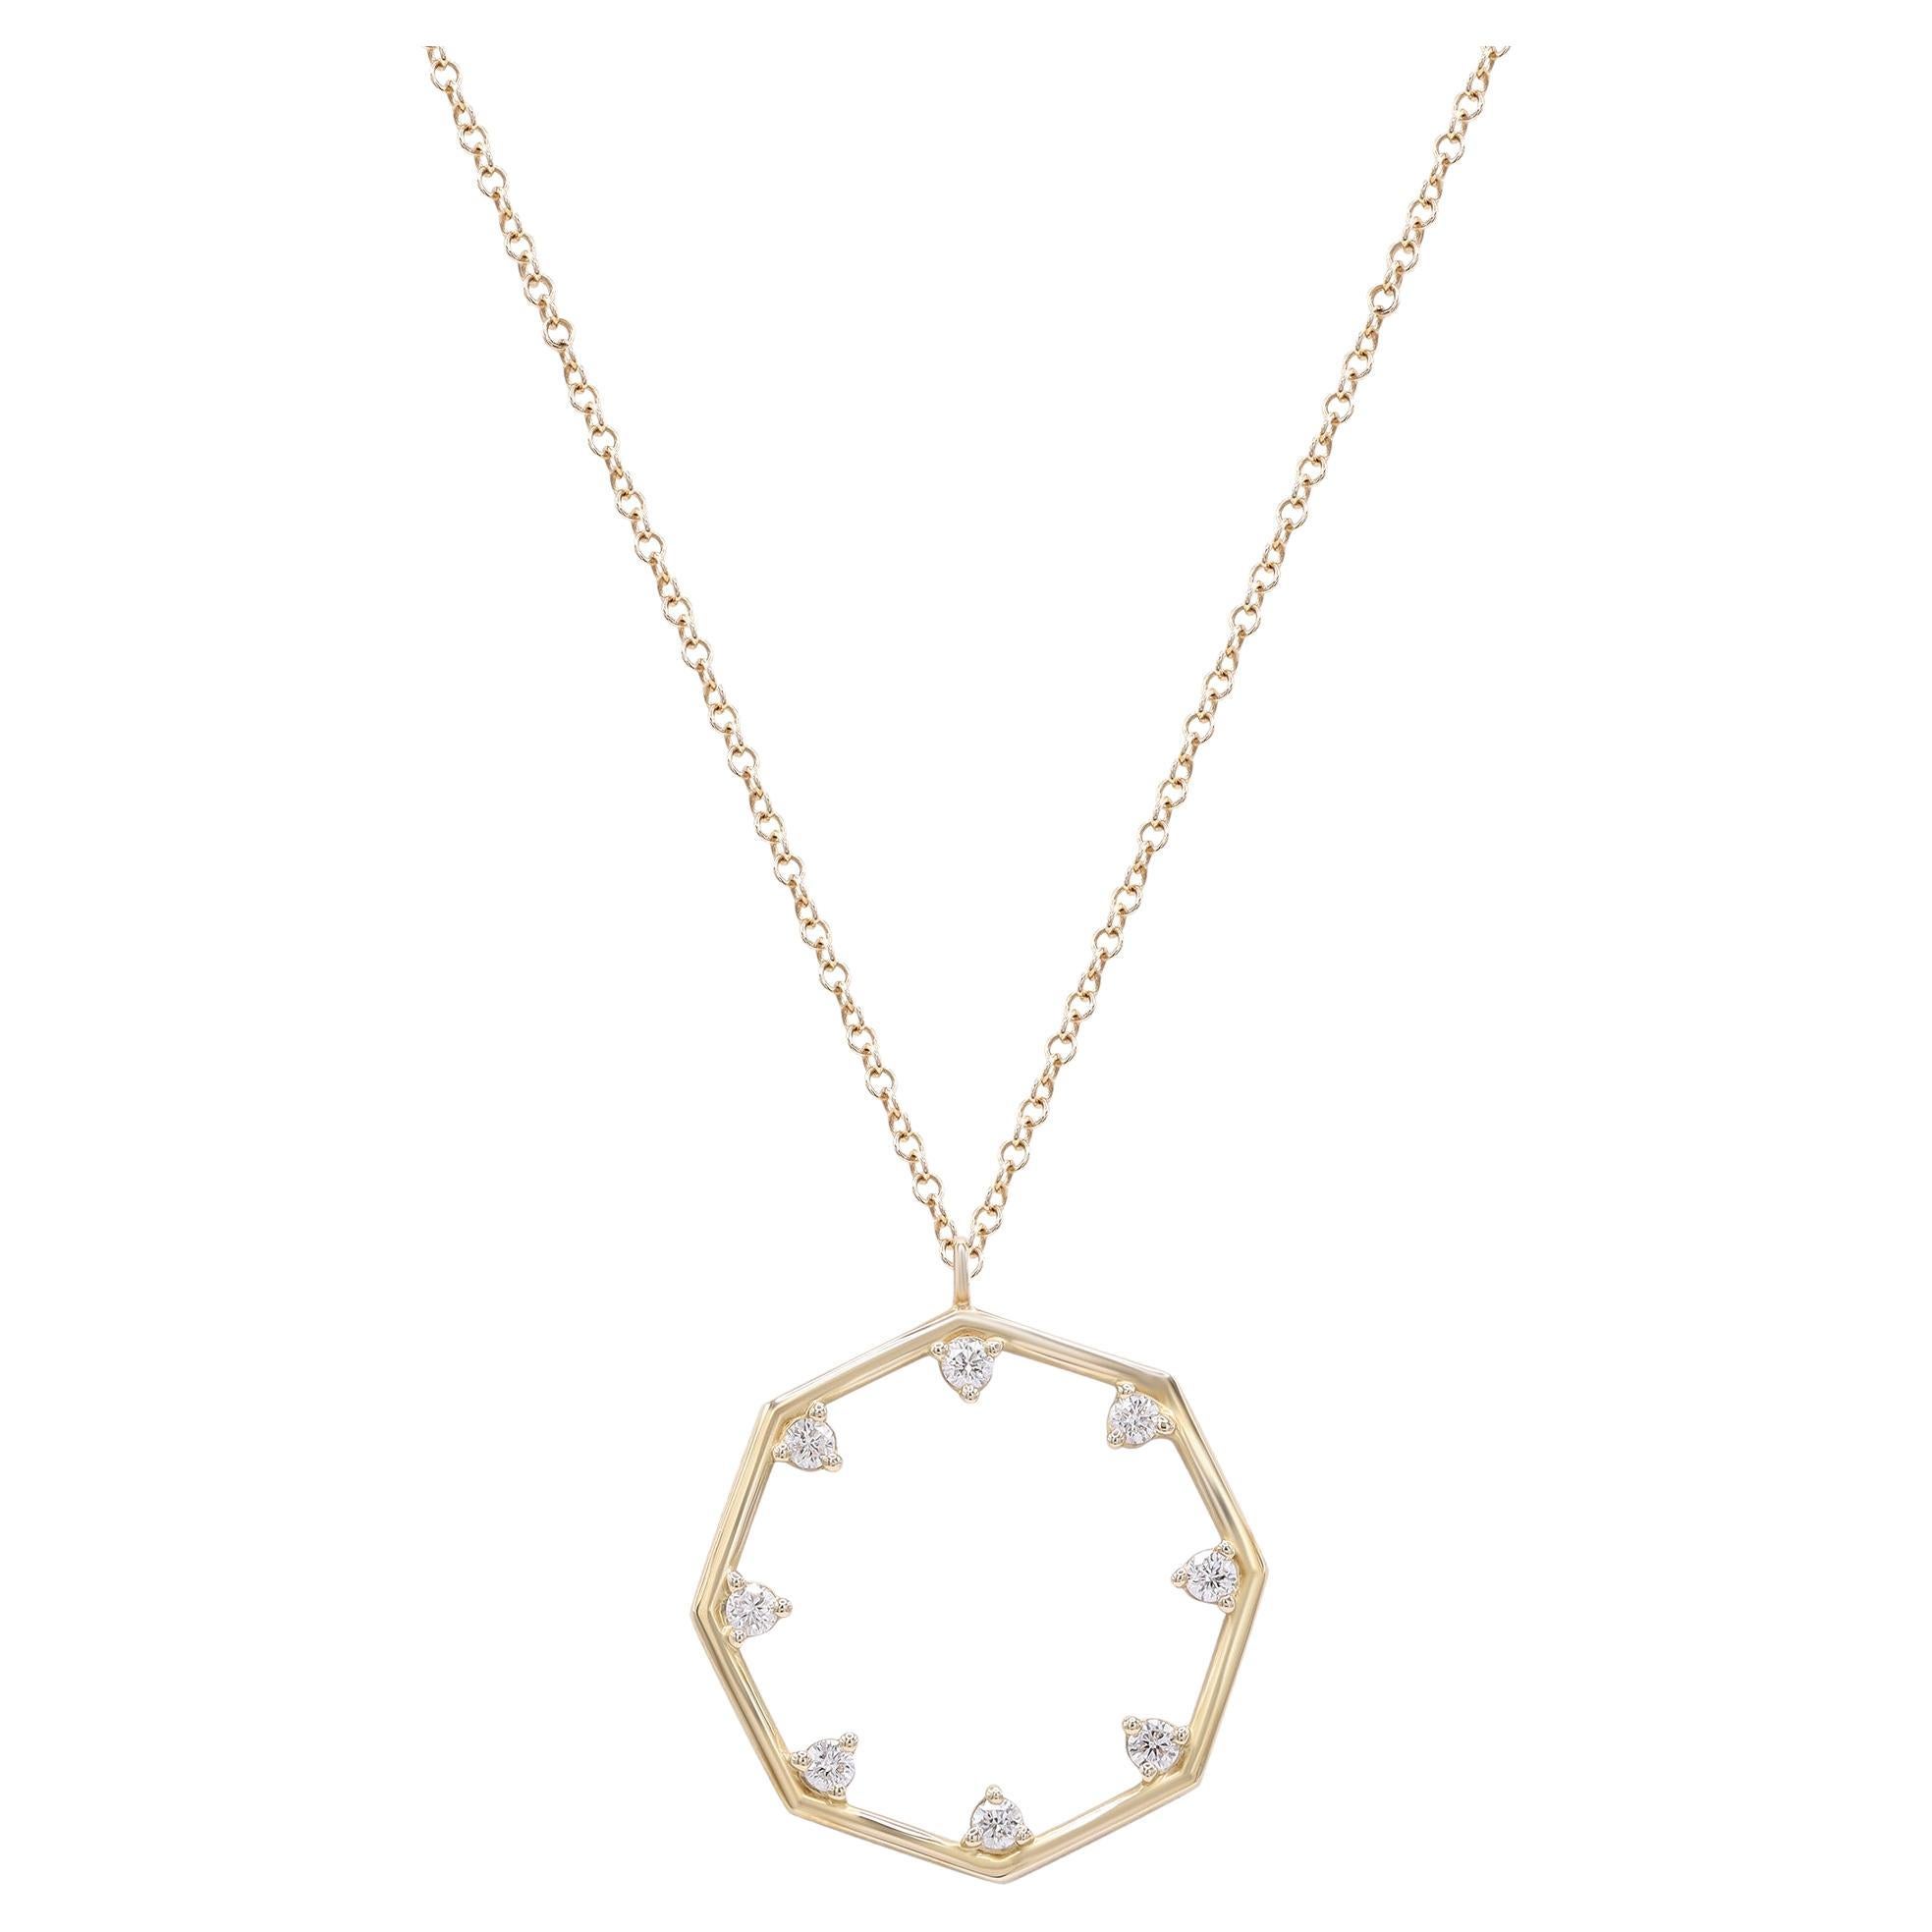 Rachel Koen Collier à pendentif octogonal en or jaune 14 carats et diamants 0,17 carat